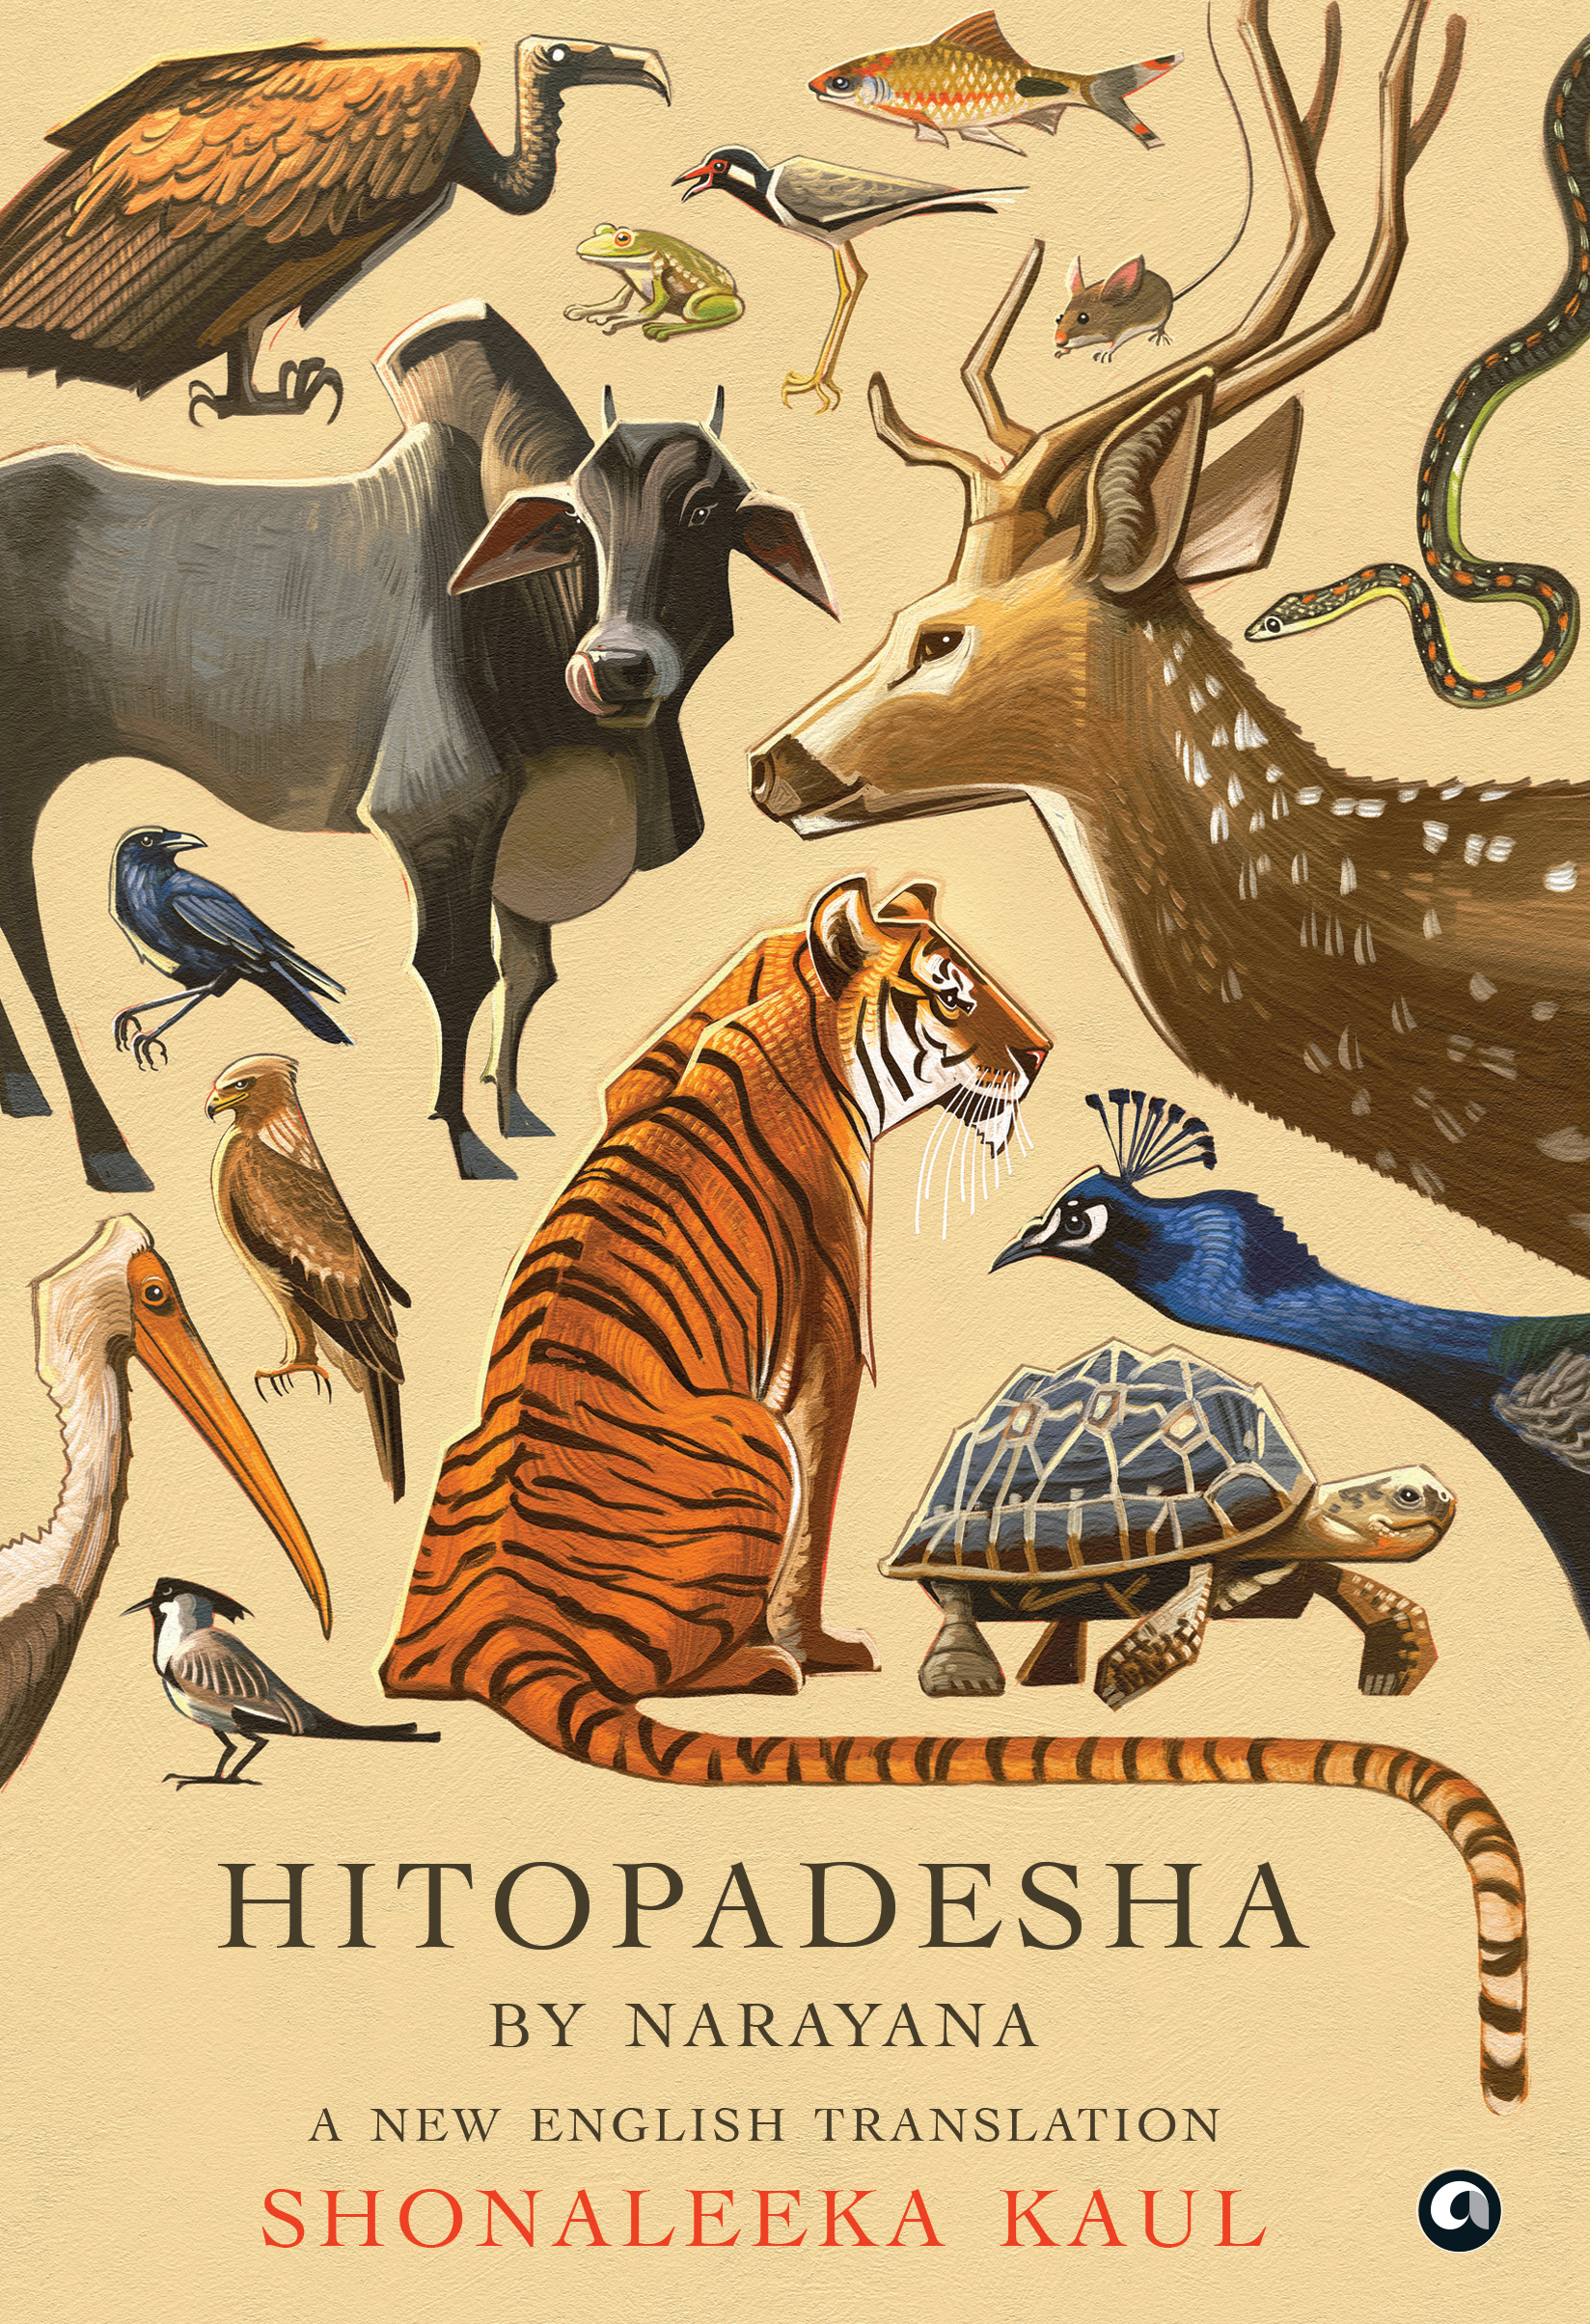 Hitopadesha by Narayana: A New English Translation